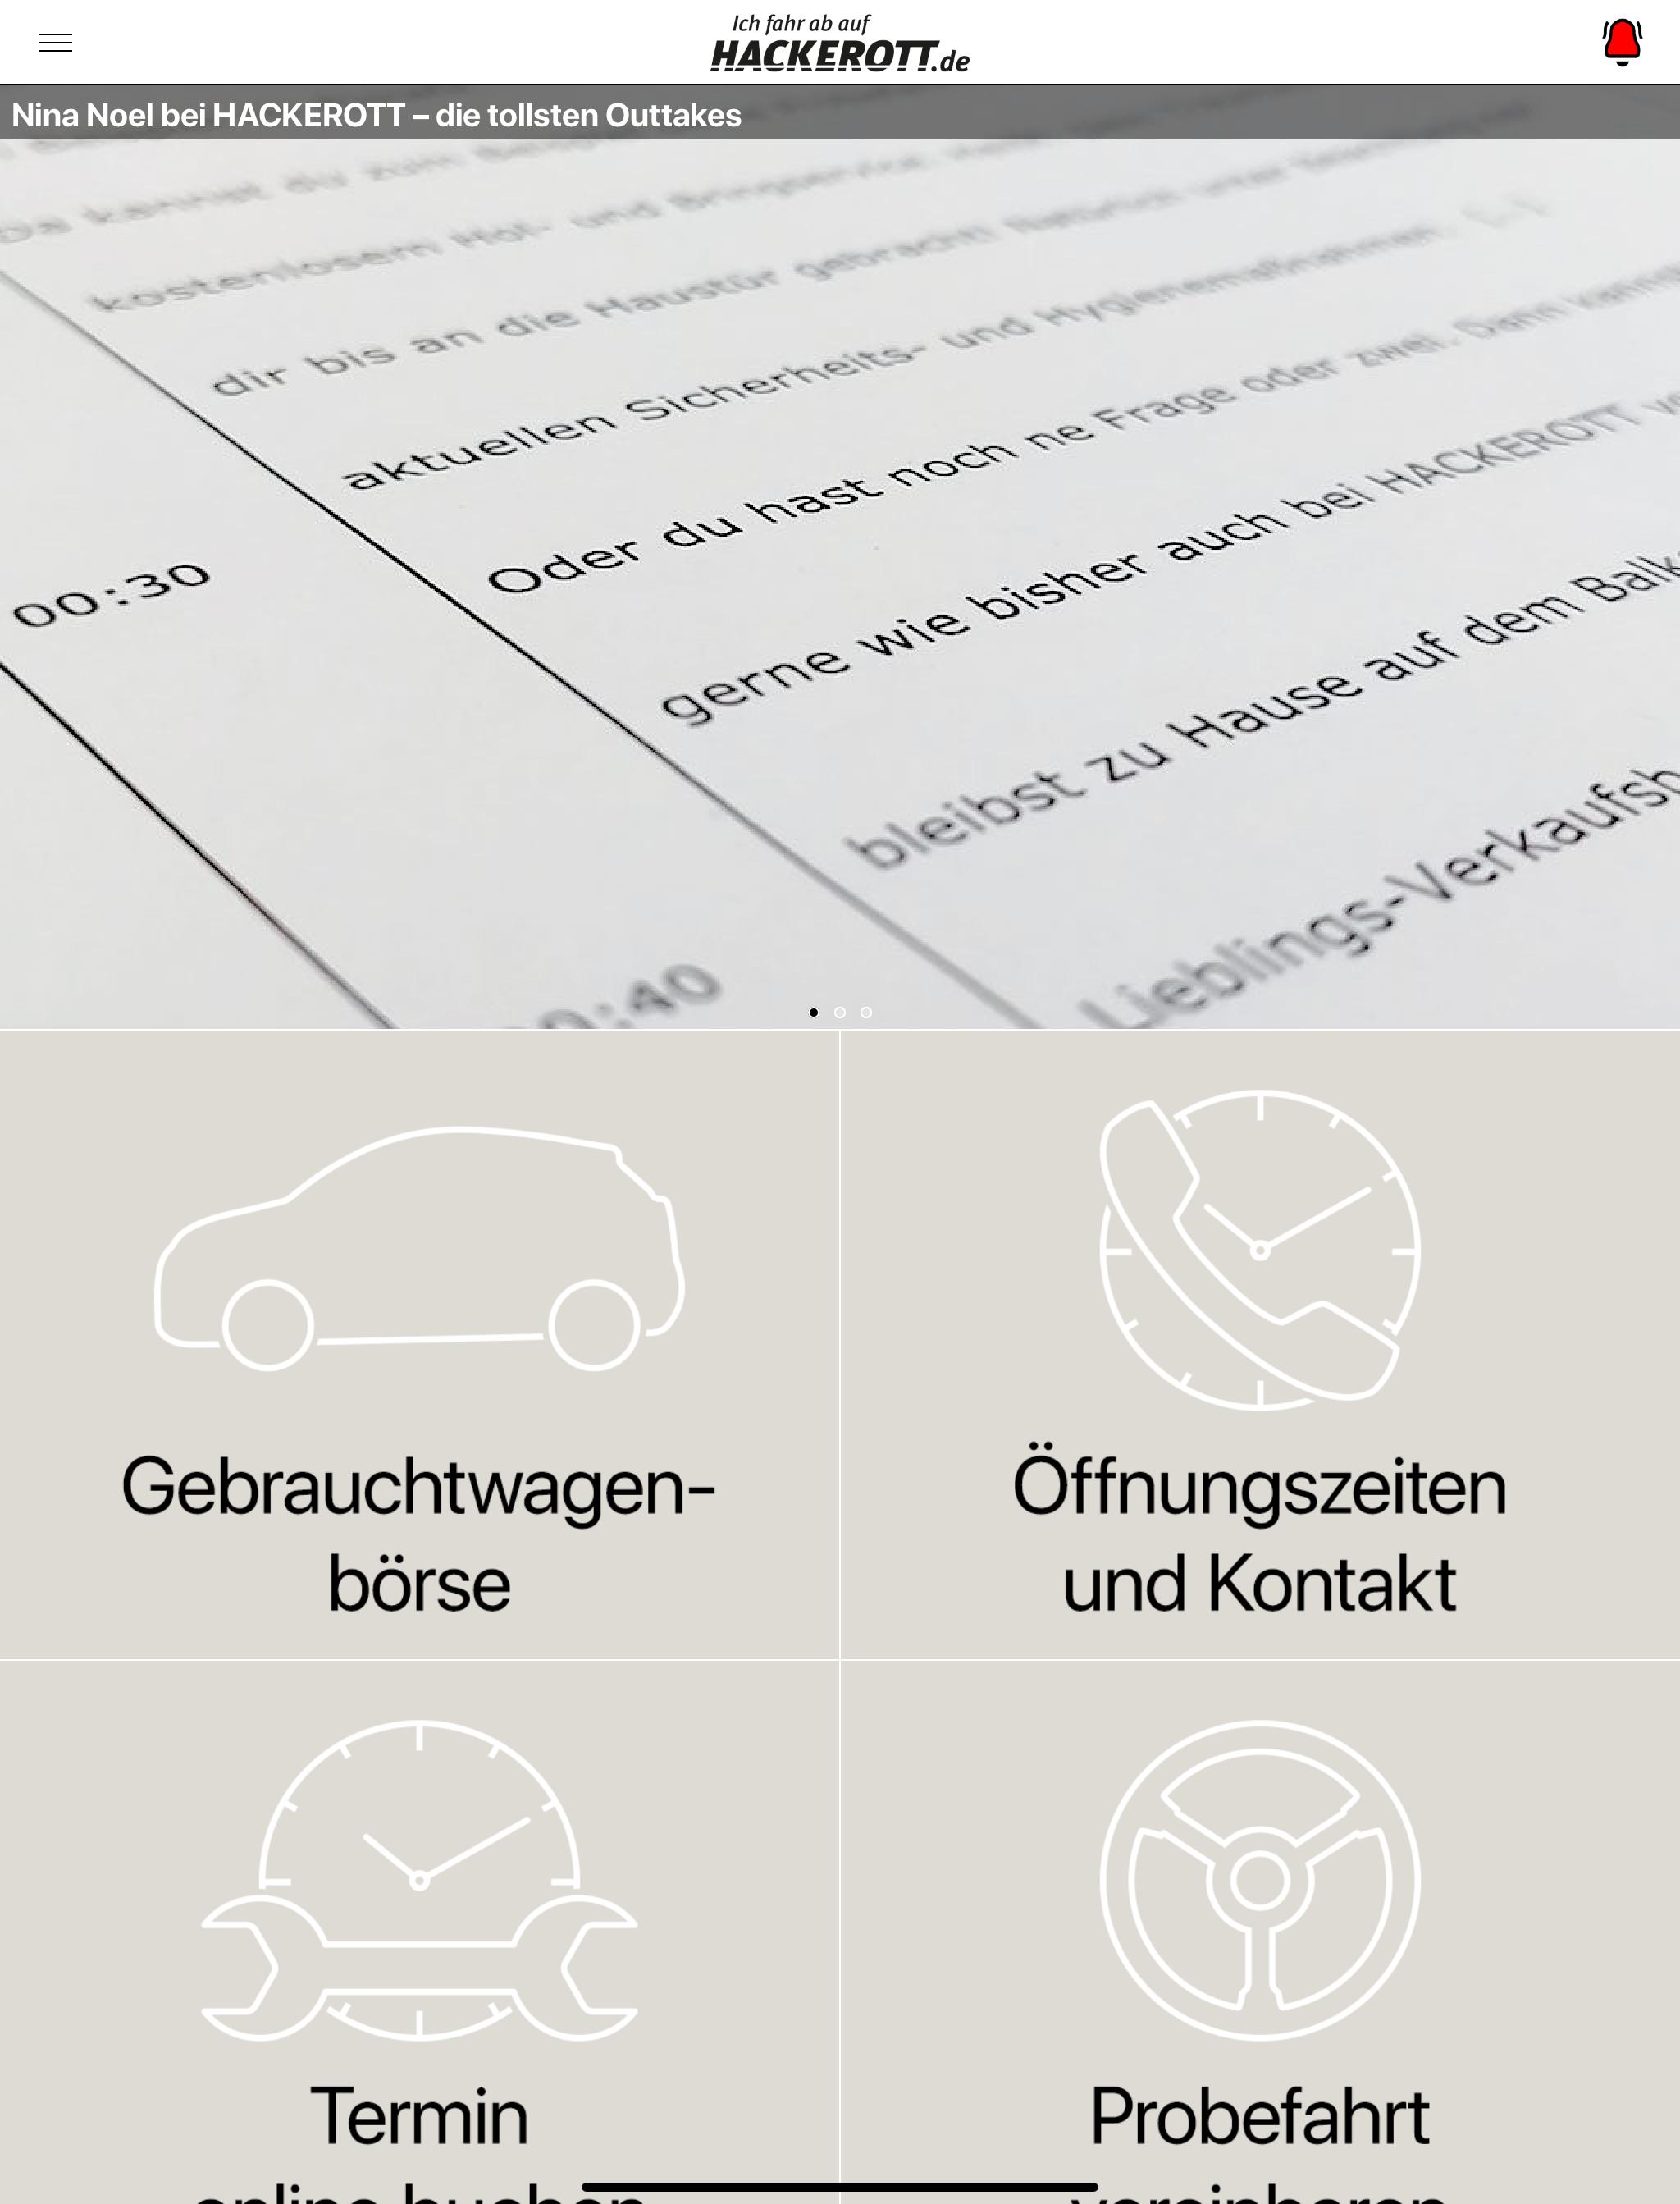 SEAT und ŠKODA von HACKEROTT for Android - APK Download